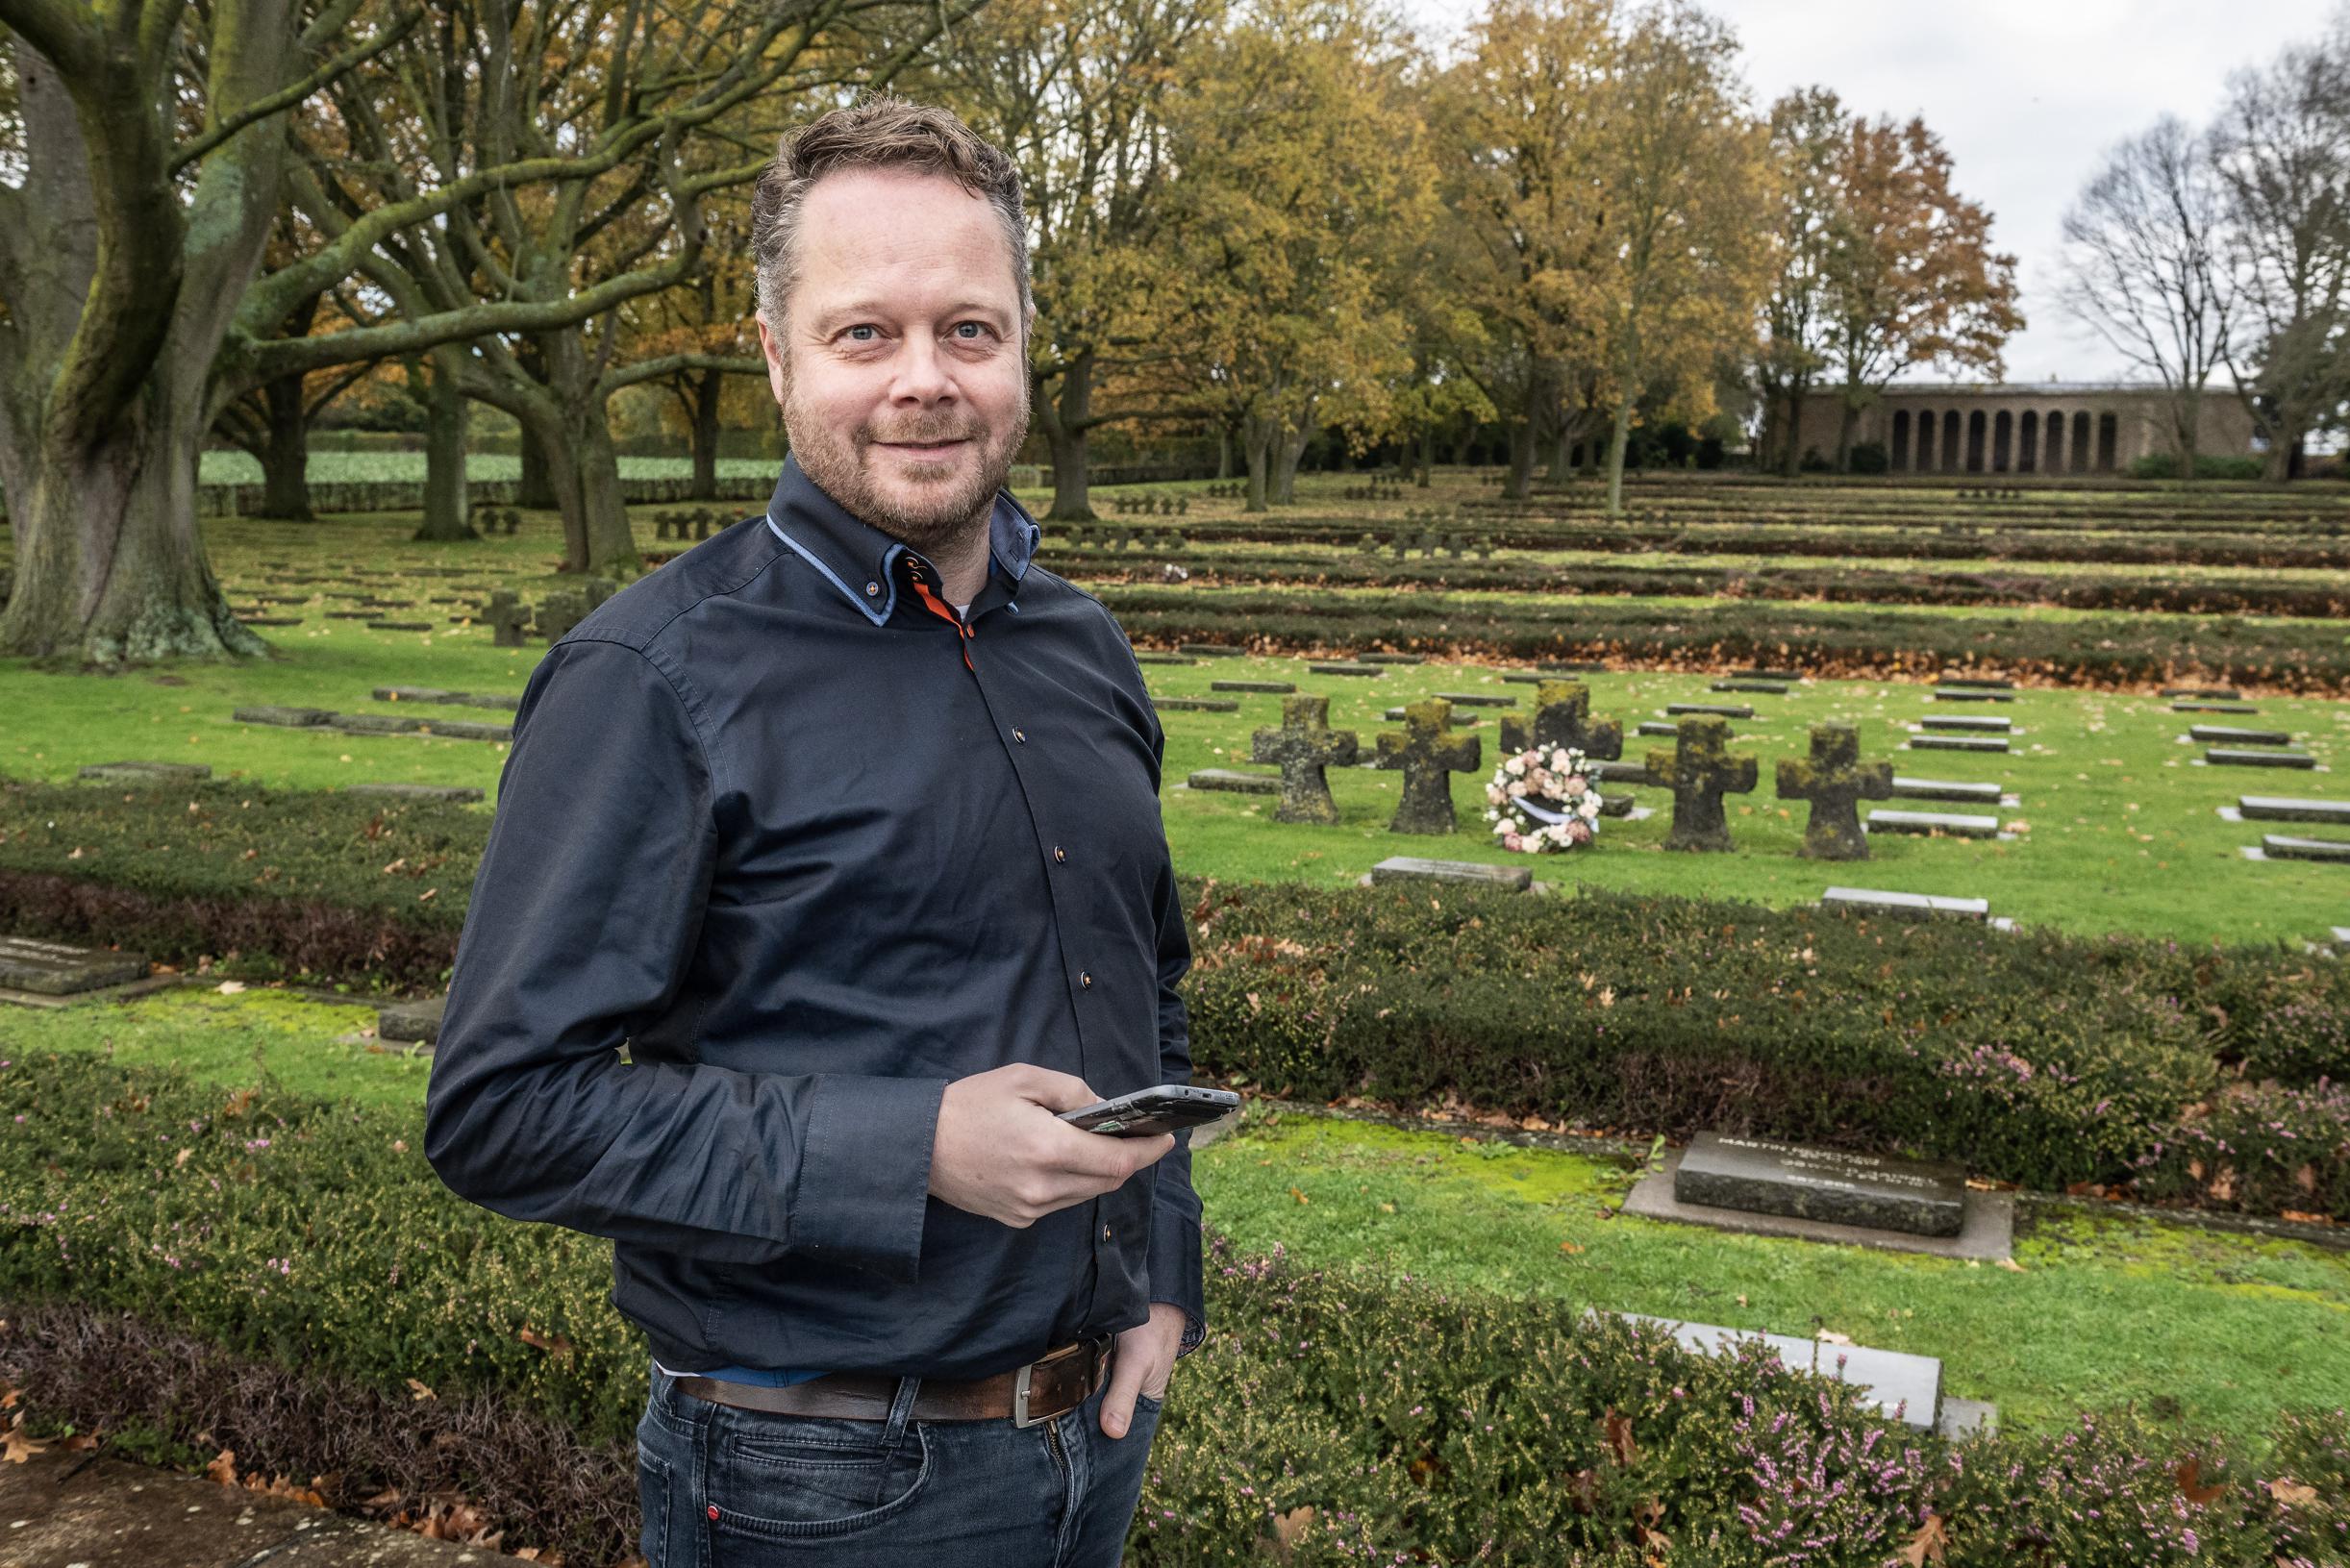 Ontdek oorlogsverleden Hooglede via app op Duitse militaire begraafplaats: “We willen investeren in toerisme rond Eerste Wereldoorlog”